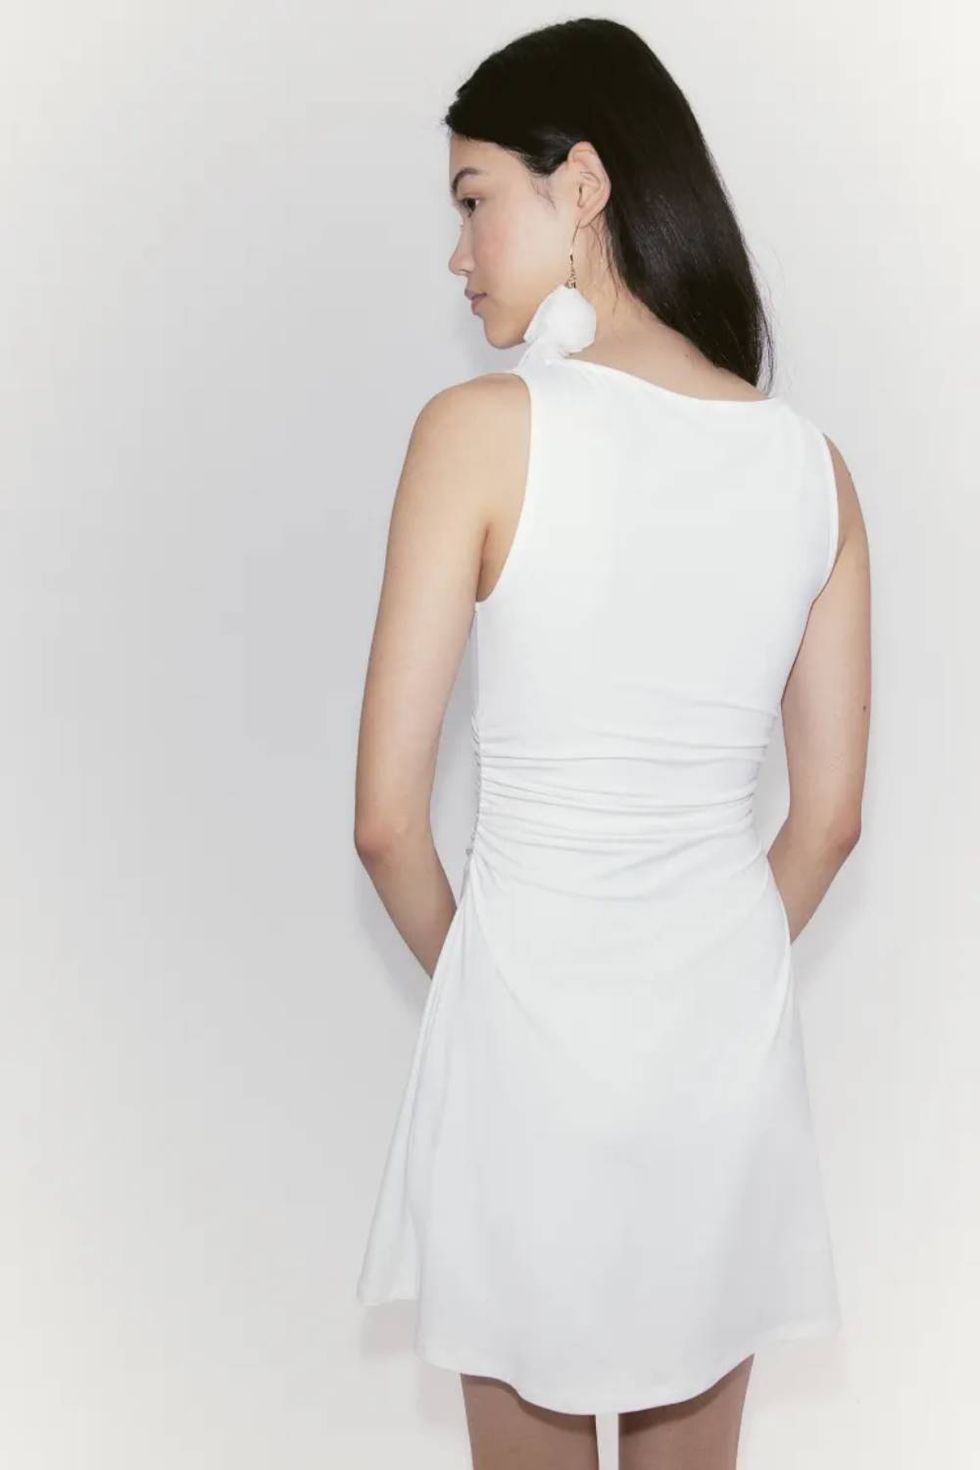 a woman wearing a white dress